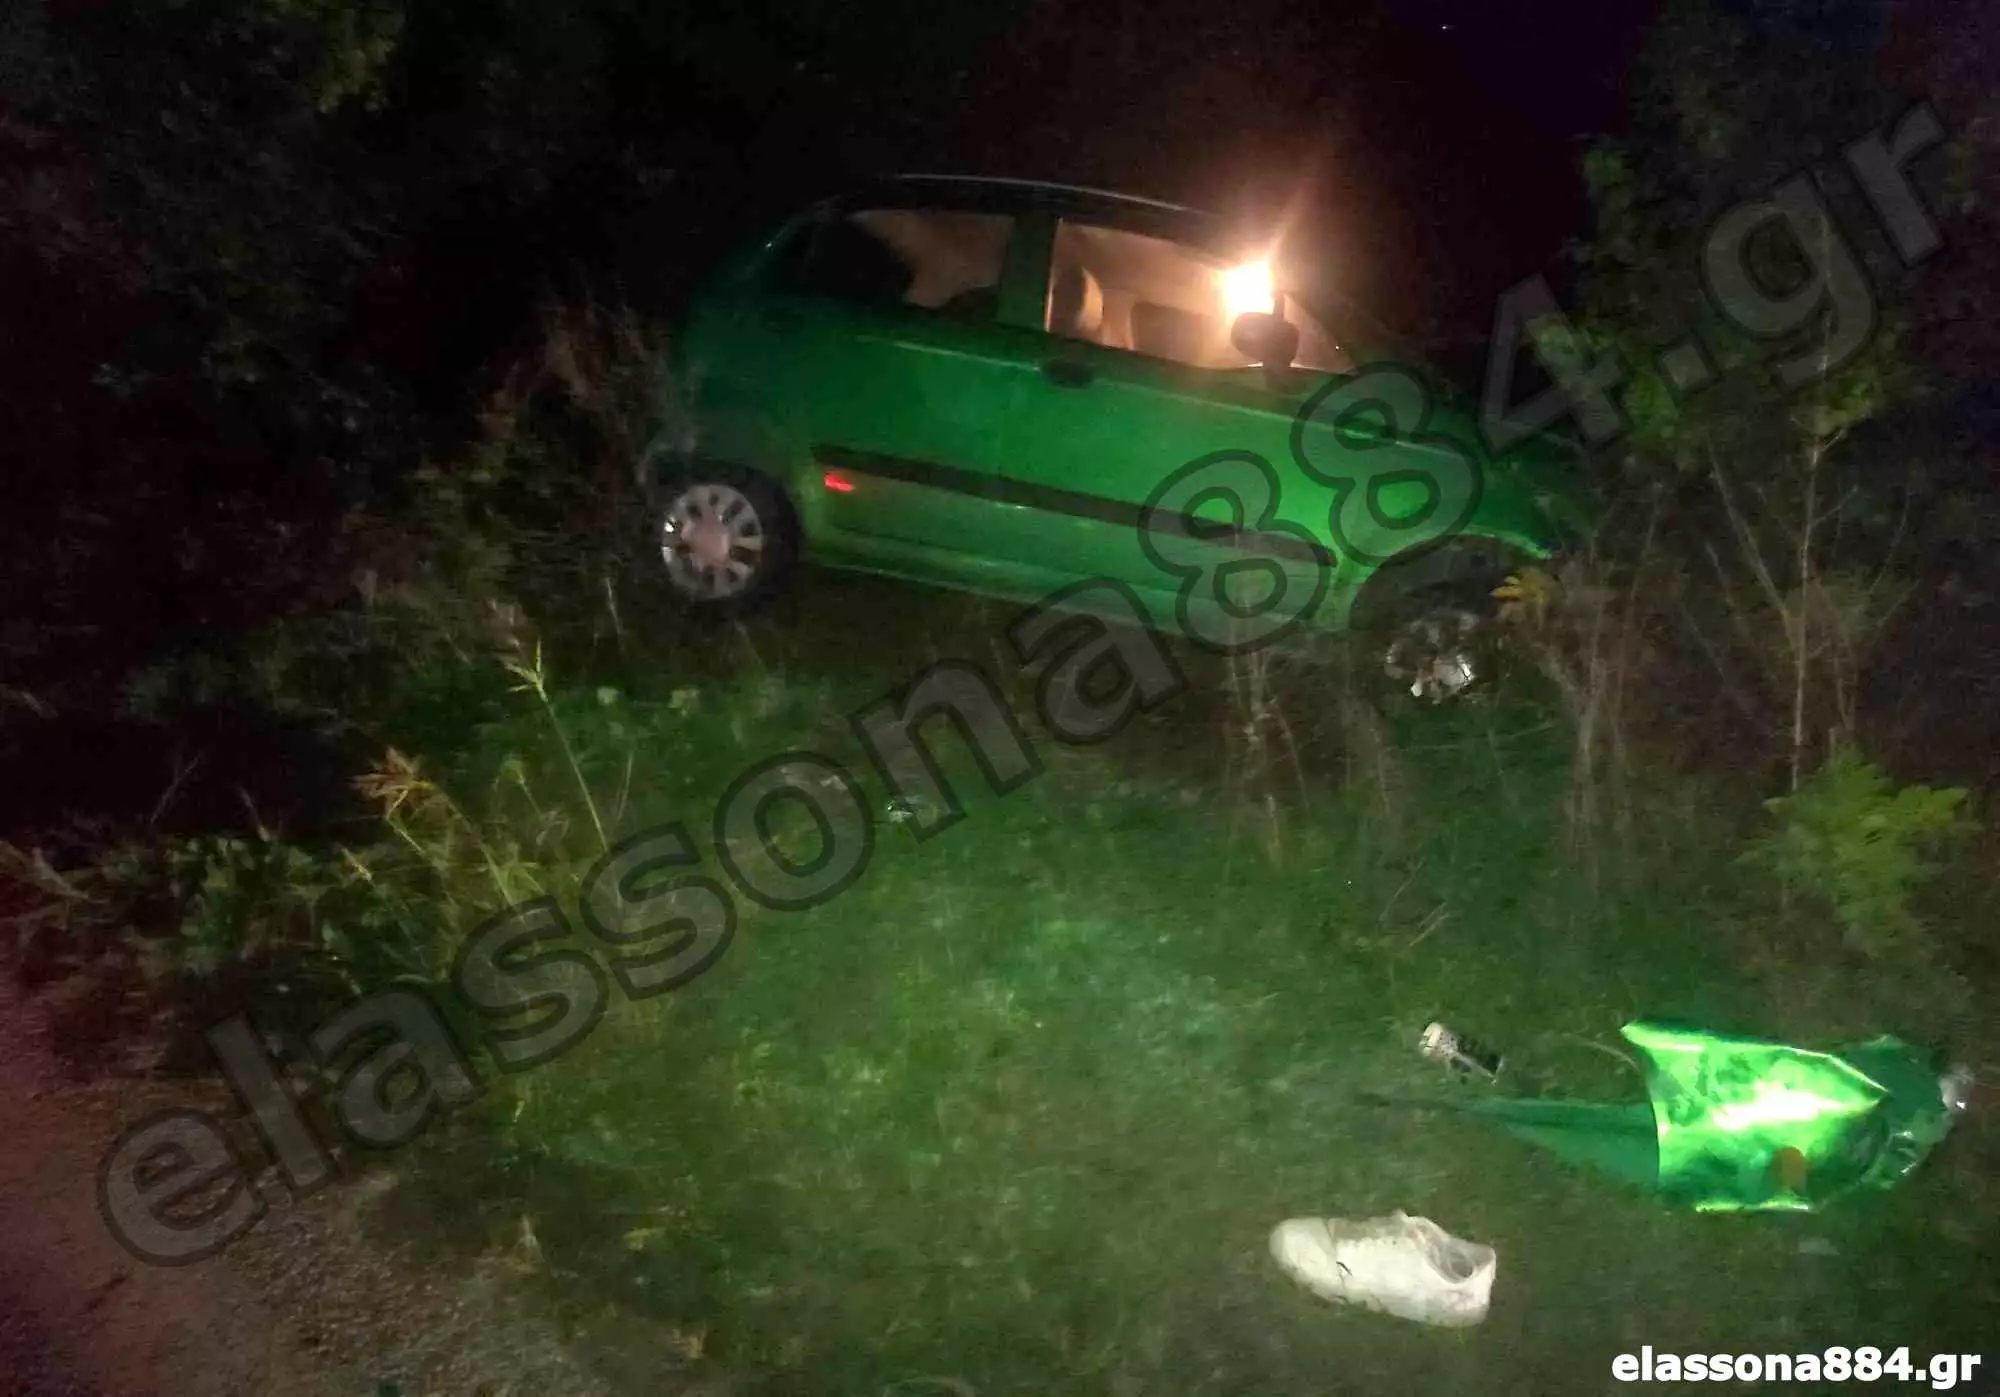 Ελασσόνα: Ανήλικος σκοτώθηκε σε τροχαίο μετά από σύγκρουση αυτοκινήτου με τη μηχανή που οδηγούσε